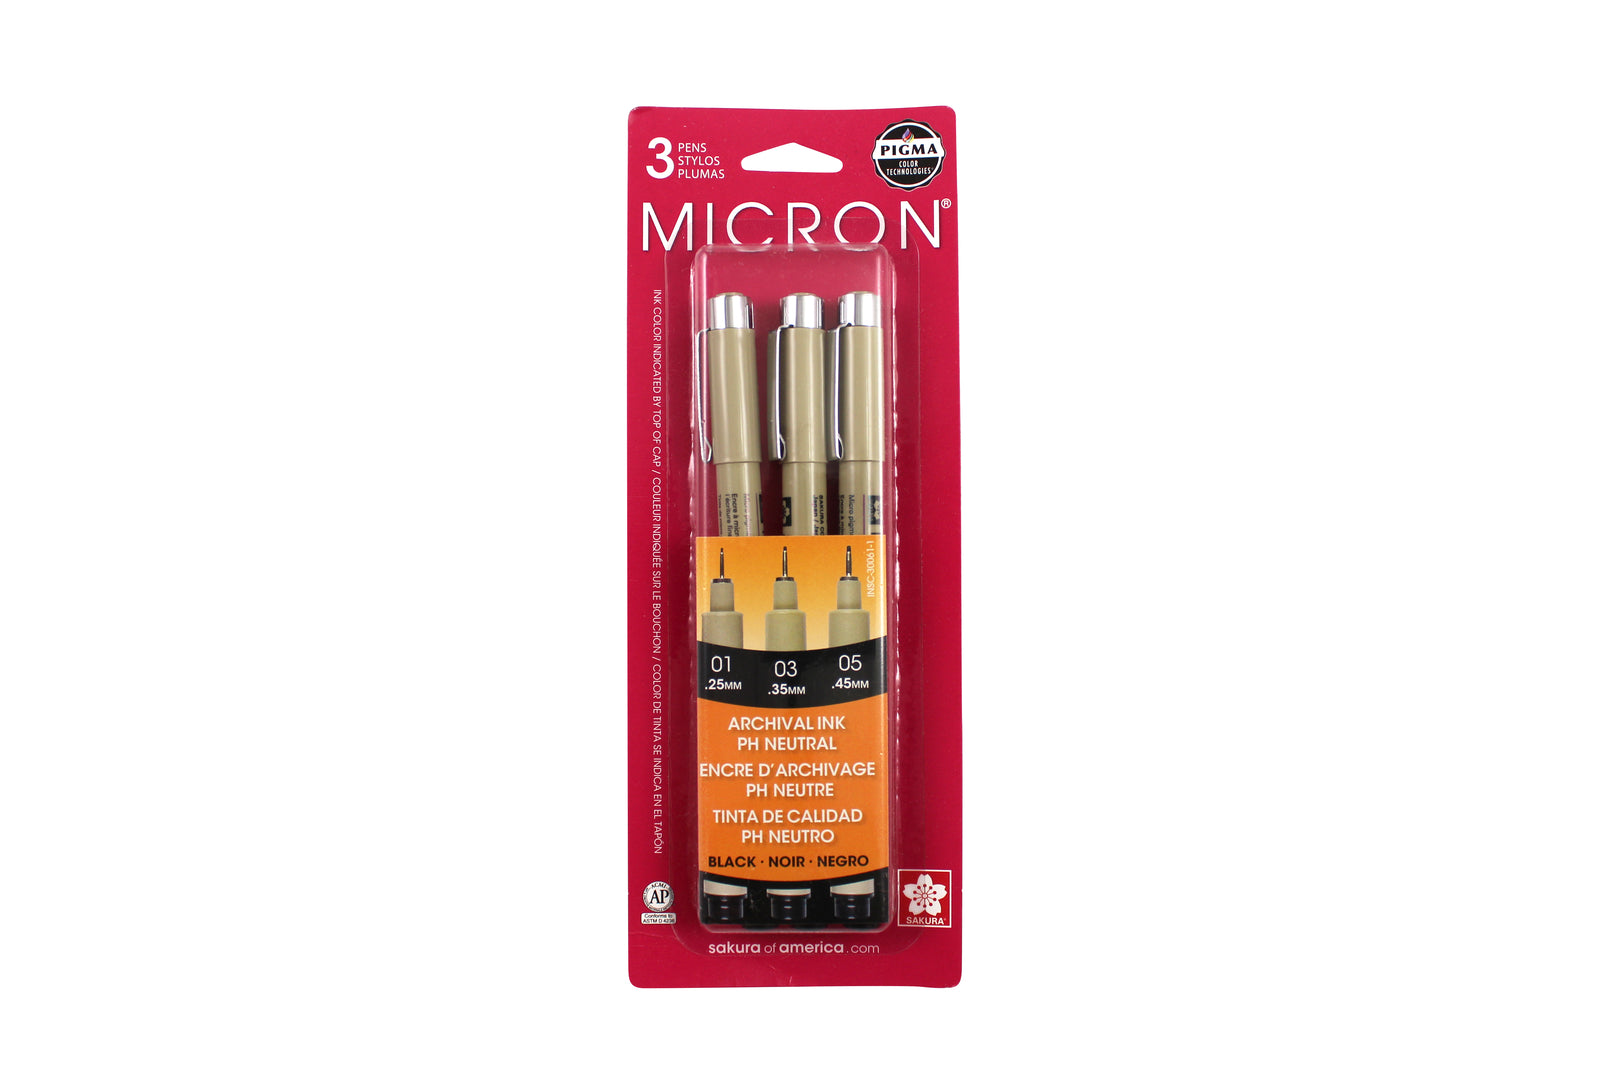 Crayon stylo d'encre d'archivage Noir .45mm no. 05 Pigma Micron PH